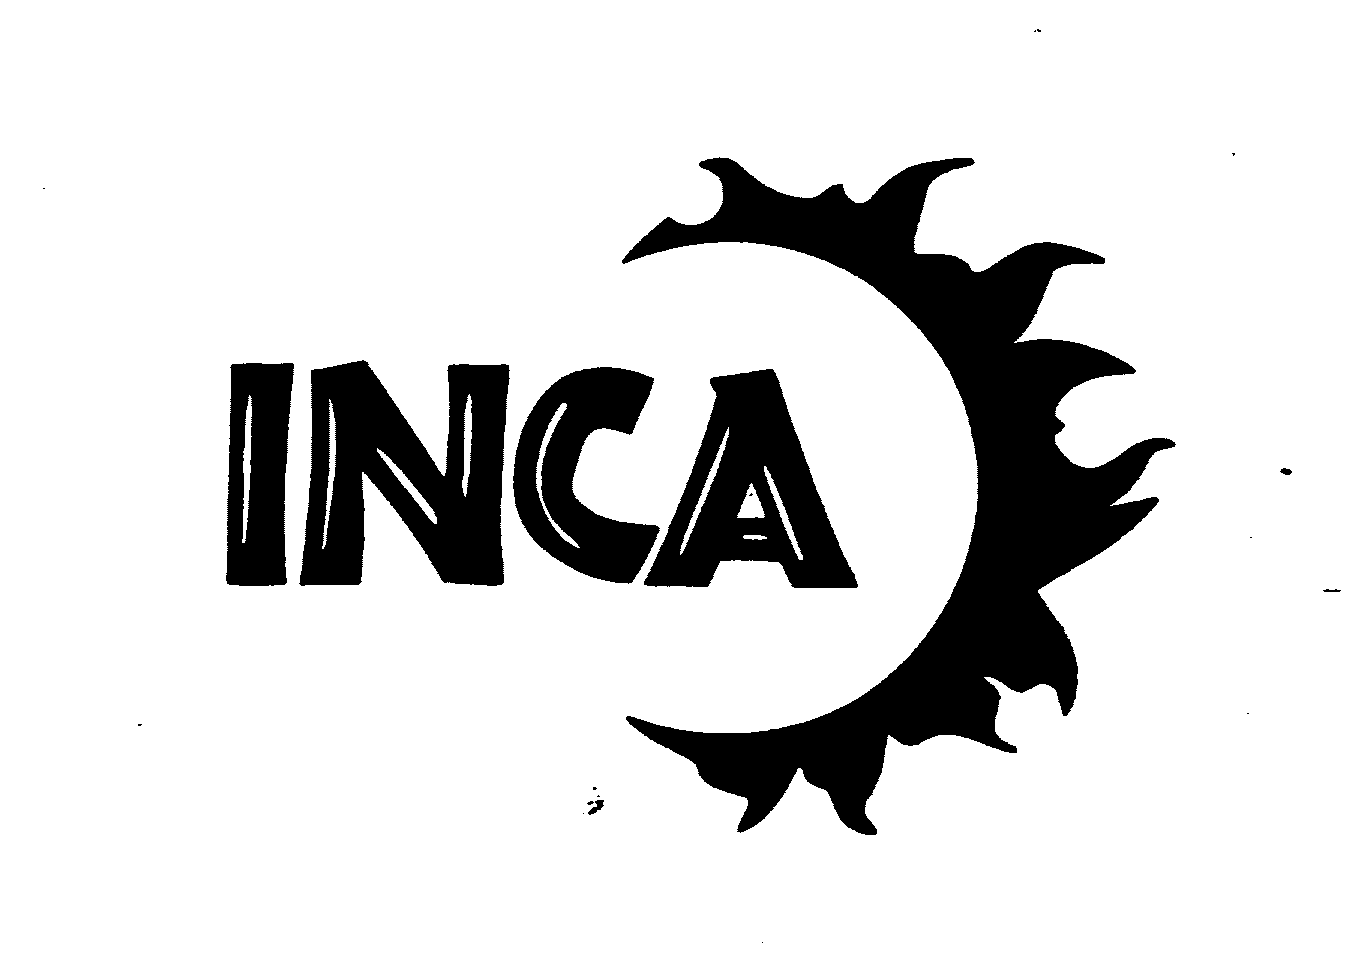 Trademark Logo INCA